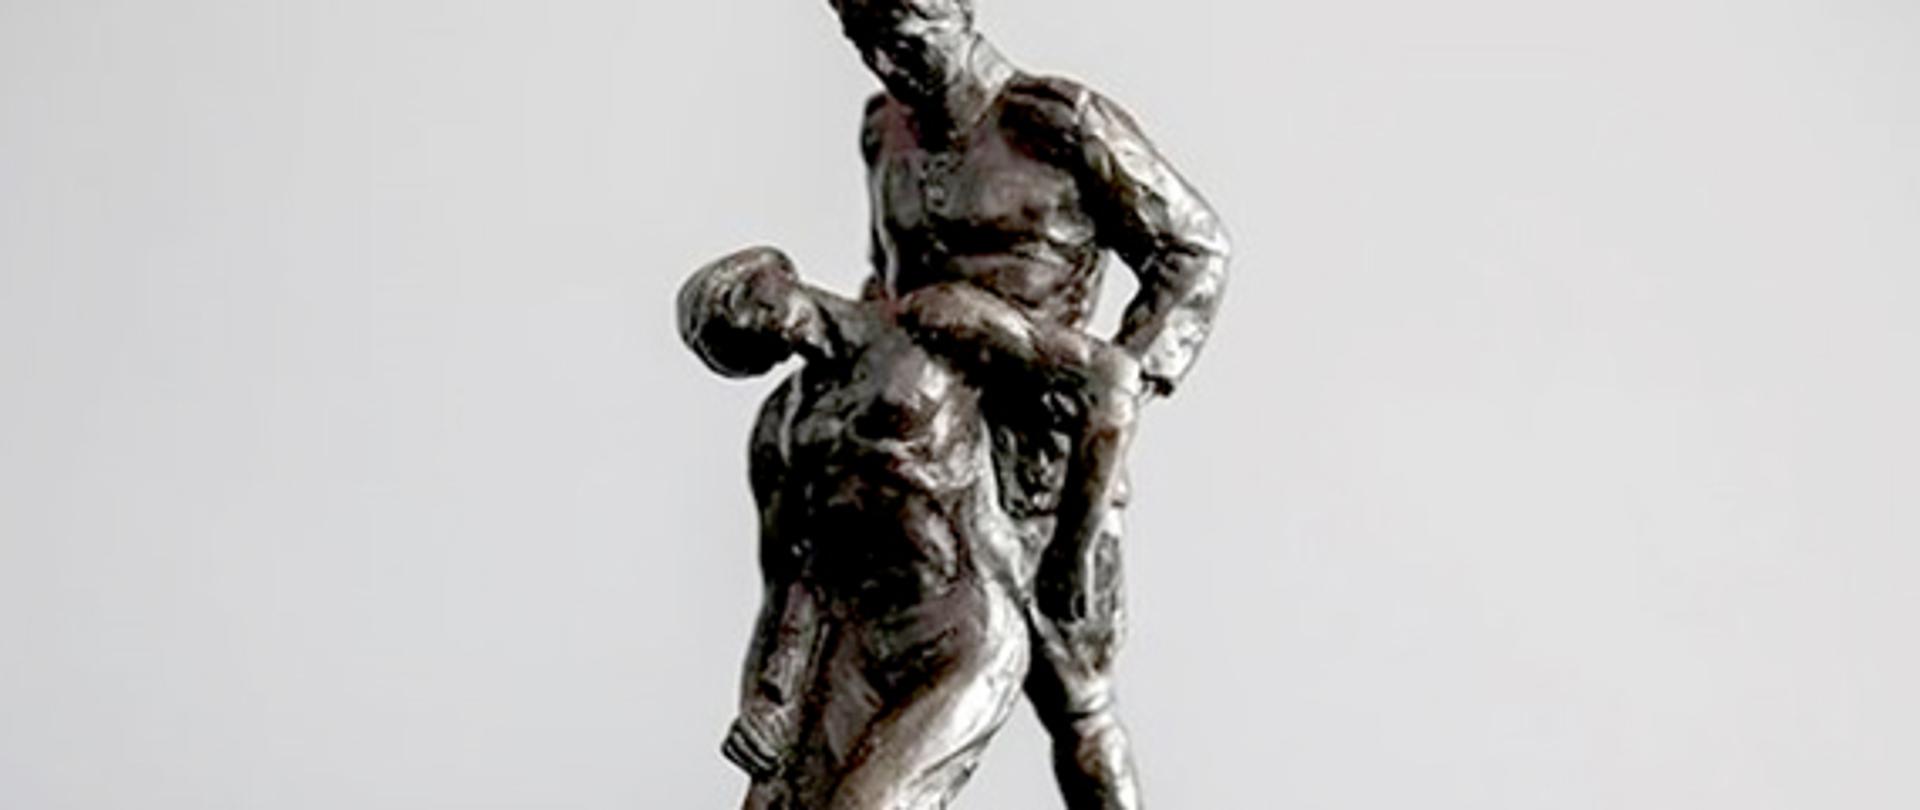 Nagrodą jest statuetka będąca miniaturą projektu „pomnika Sanitariusza”. Prace nad budową tego monumentu, upamiętniającego medyków poległych za ojczyznę – nie tylko w czasie I wojny światowej, wojny bolszewickiej w 1920 r., ale także powstań narodowowyzwoleńczych i walk w czasach napoleońskich – zainicjowano w 1927 r. Wykonanie zamówiono u prof. Edwarda Wittiga, znanego ówczesnego rzeźbiarza, autora m.in. warszawskich pomników Lotnika i Juliusza Słowackiego.